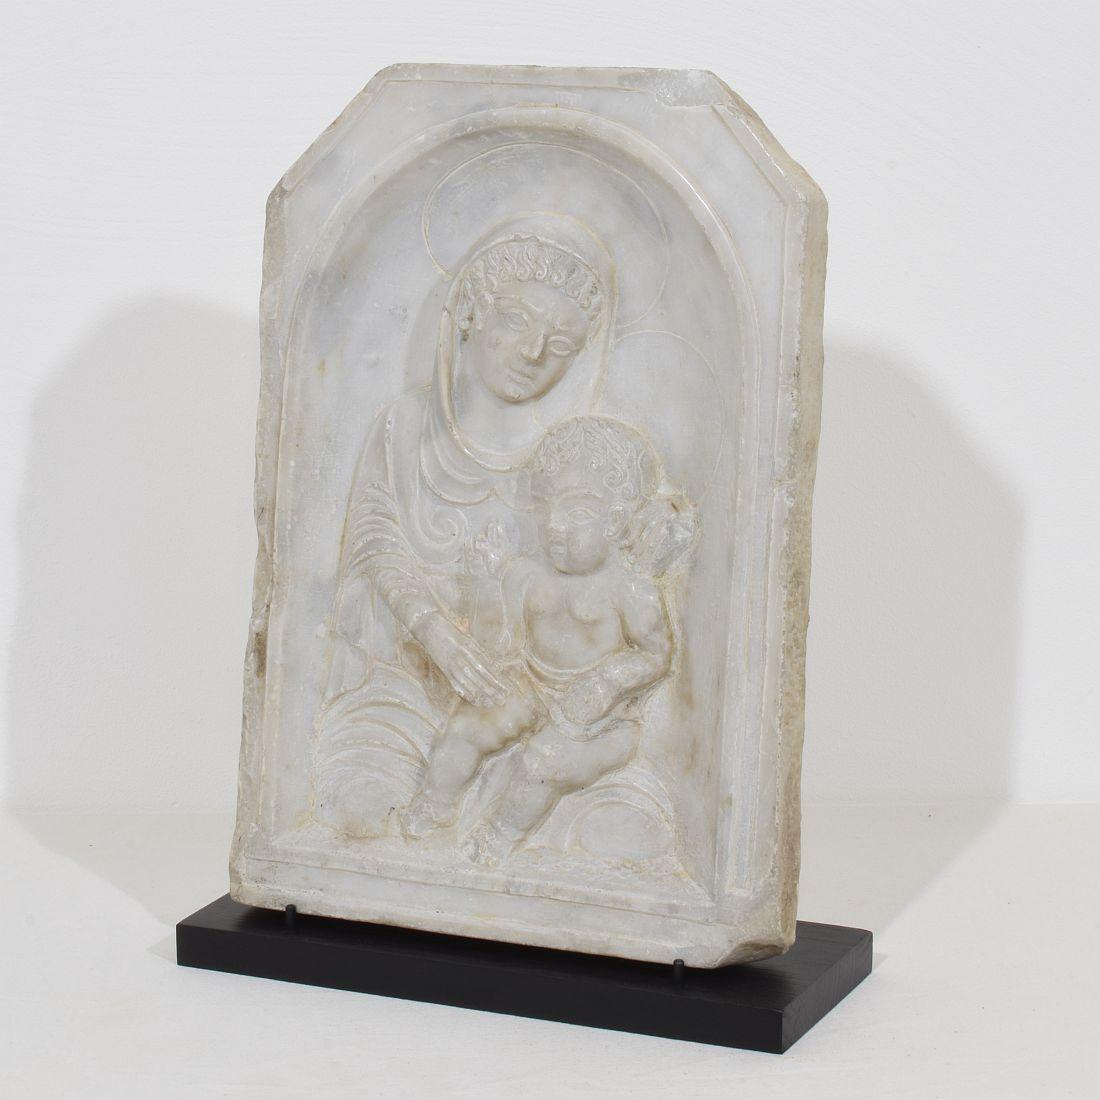 Merveilleux panneau de marbre du 17e siècle représentant une Vierge à l'enfant. Magnifique pièce d'époque avec une belle patine.
Italie vers 1650. Usures et petites pertes.
Les mesures incluent le socle en bois.